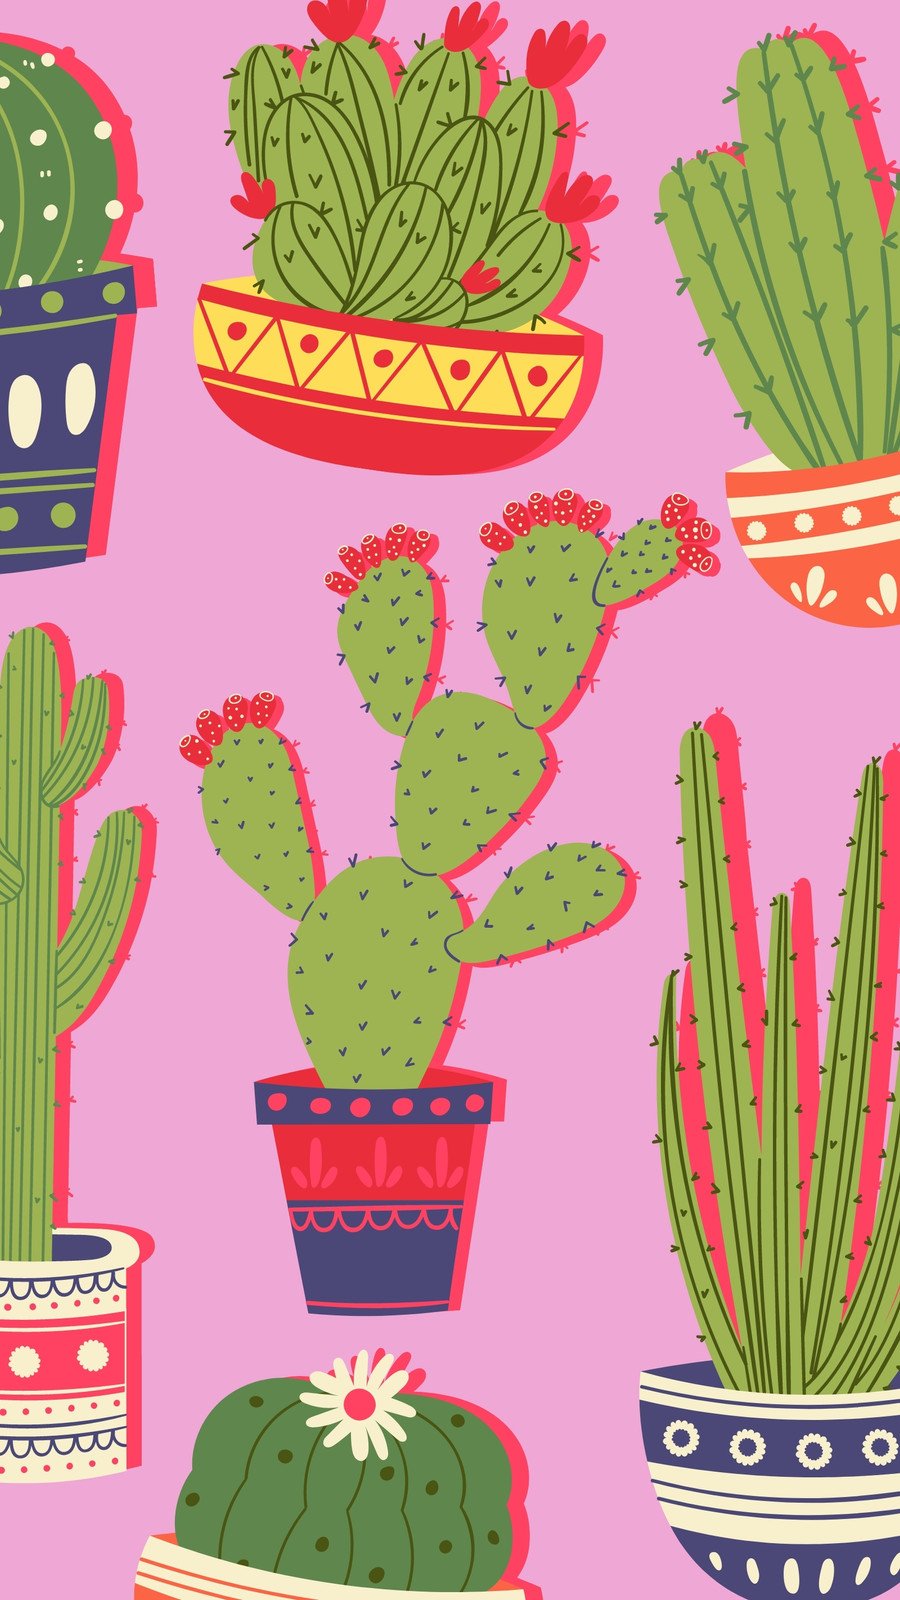 Plantillas cactus - Gratis y editables - Canva